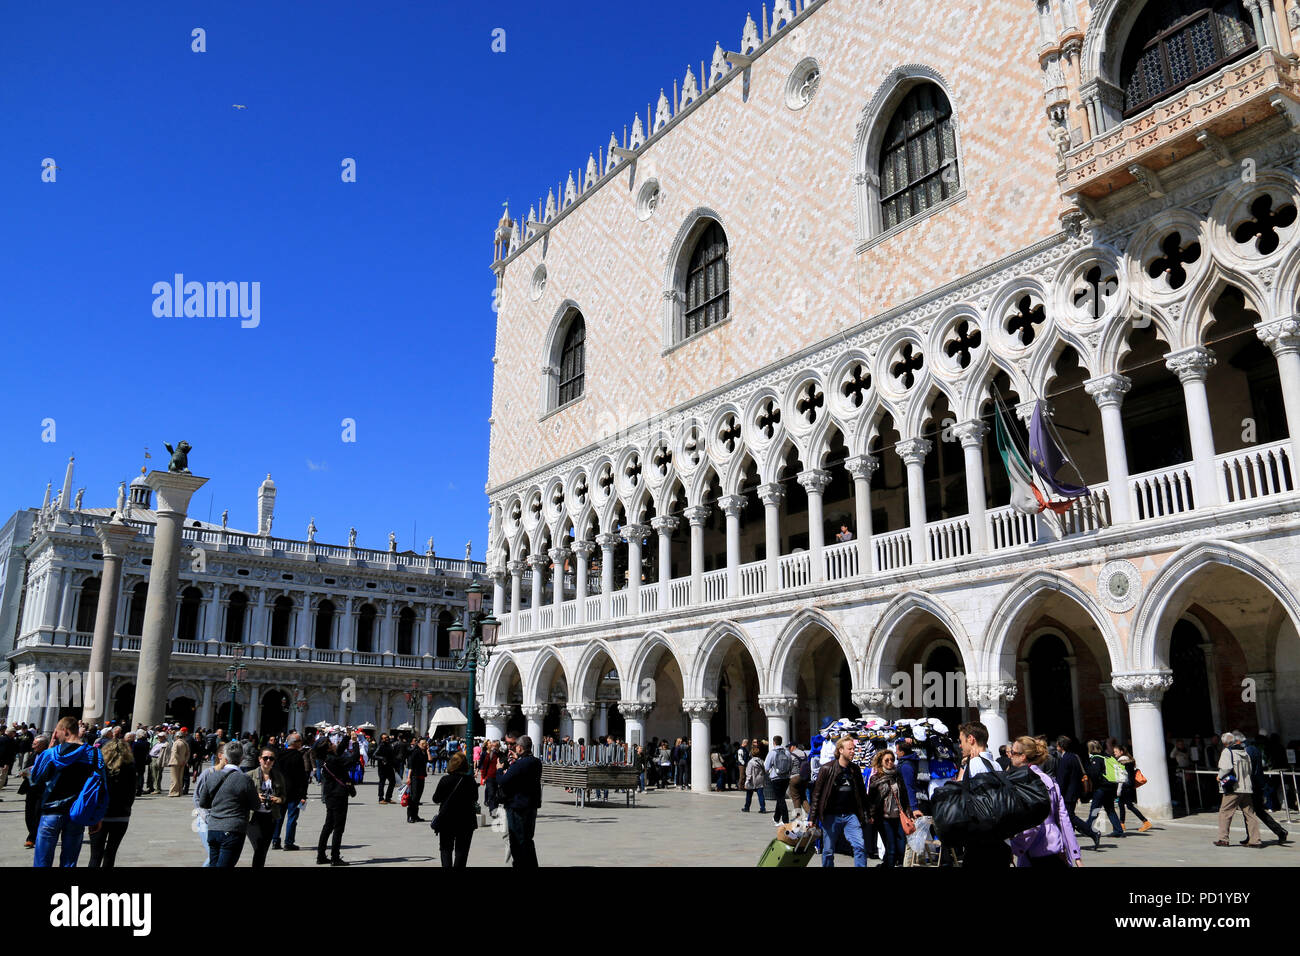 Il Palazzo del Doge, Jacopo Sansovino Biblioteca e le due colonne di San Marco nella piazzetta di San Marco a Venezia, Italia Foto Stock